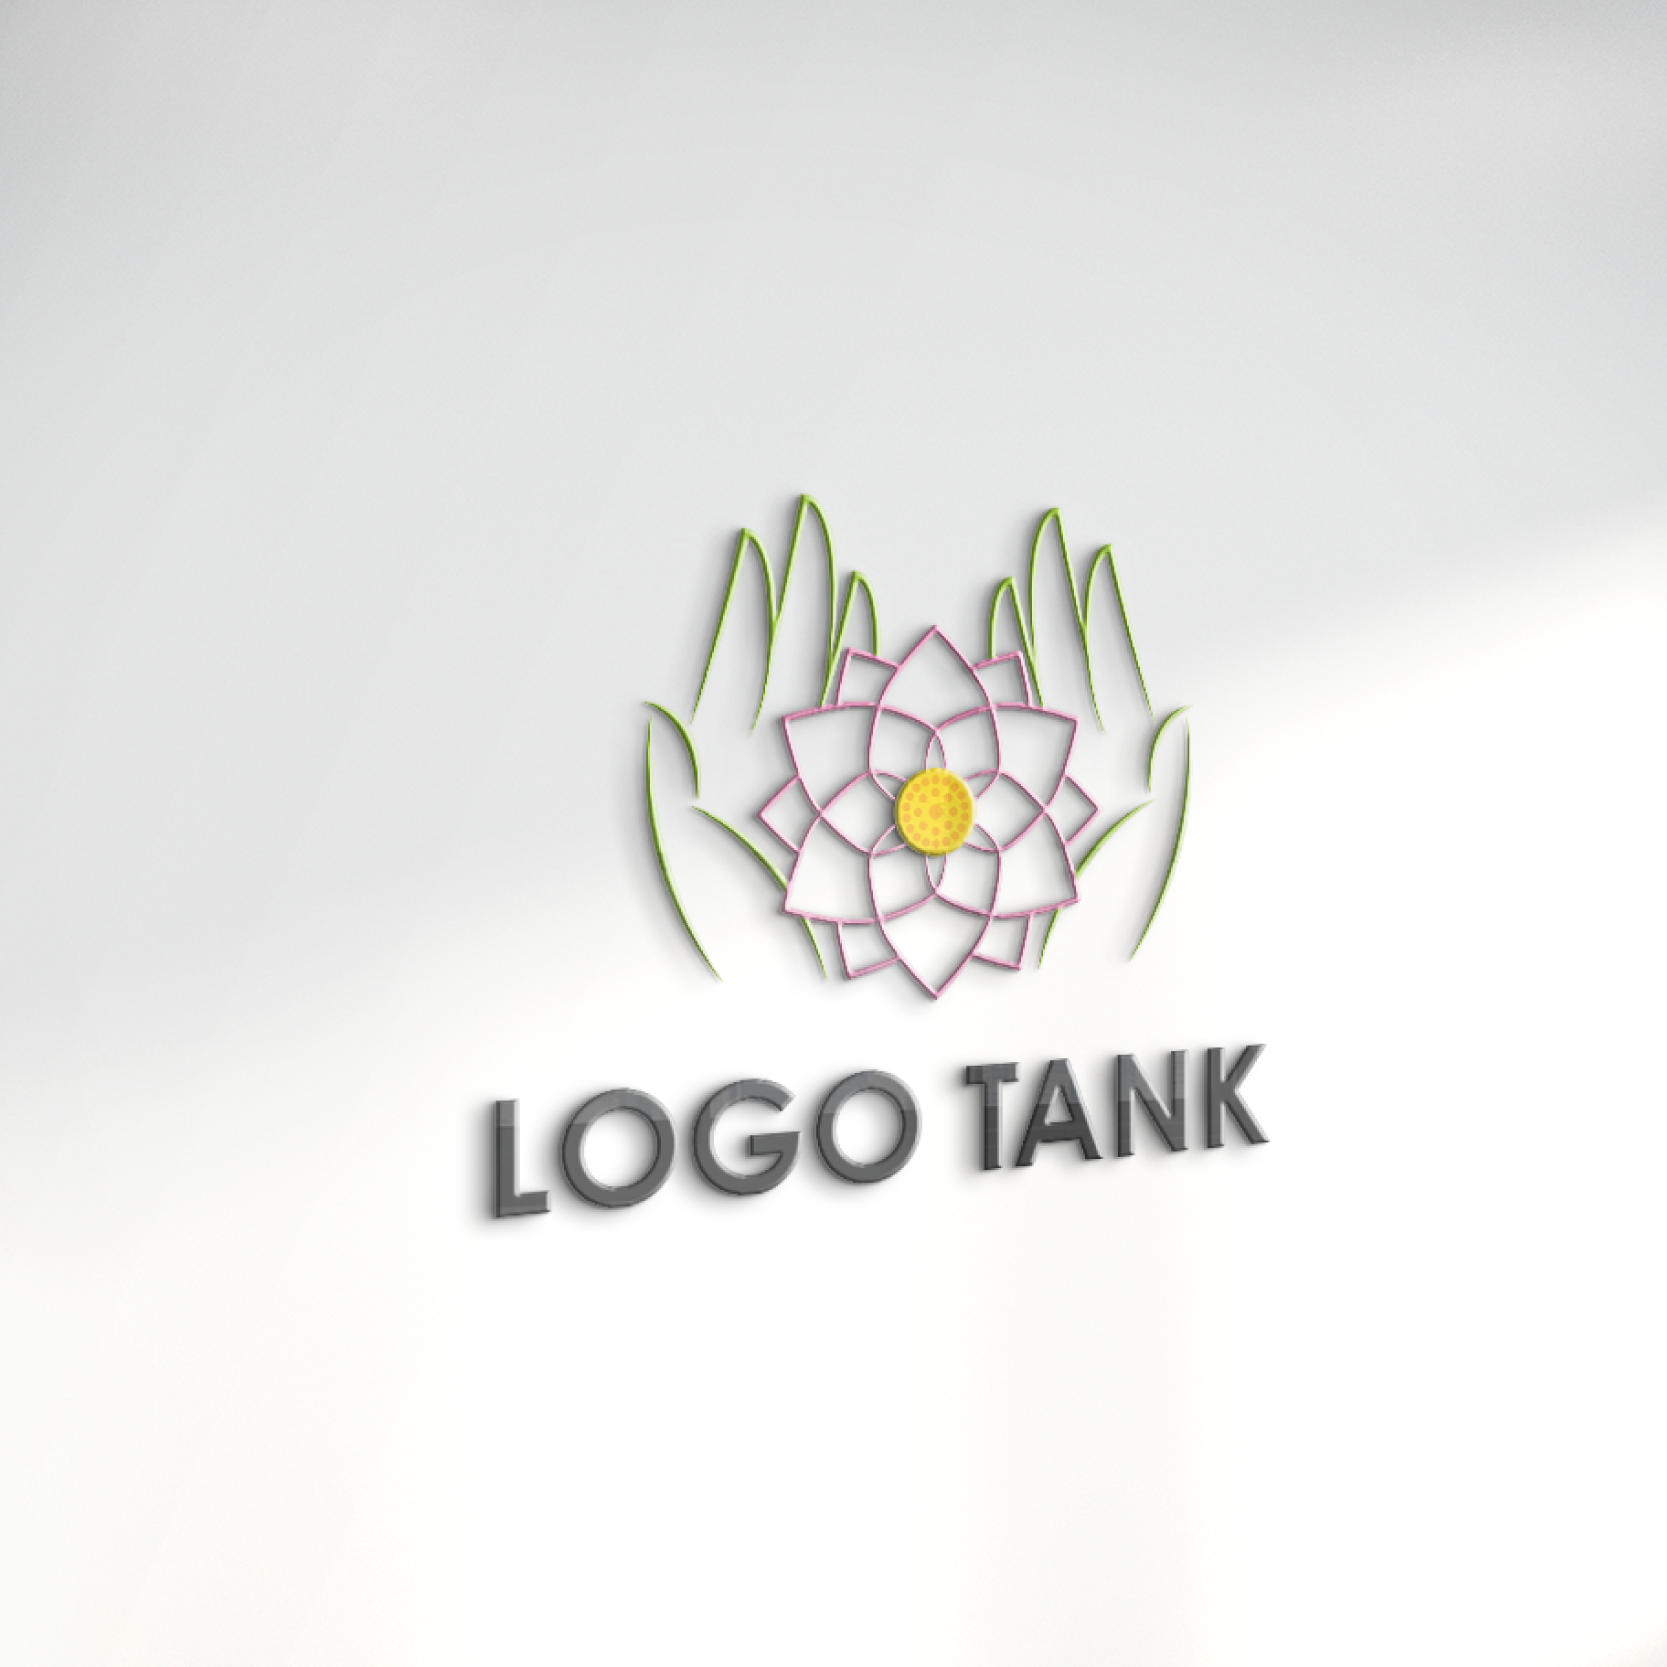 ロゴでカルプ看板を作成したイメージ | 蓮の花と手のロゴ